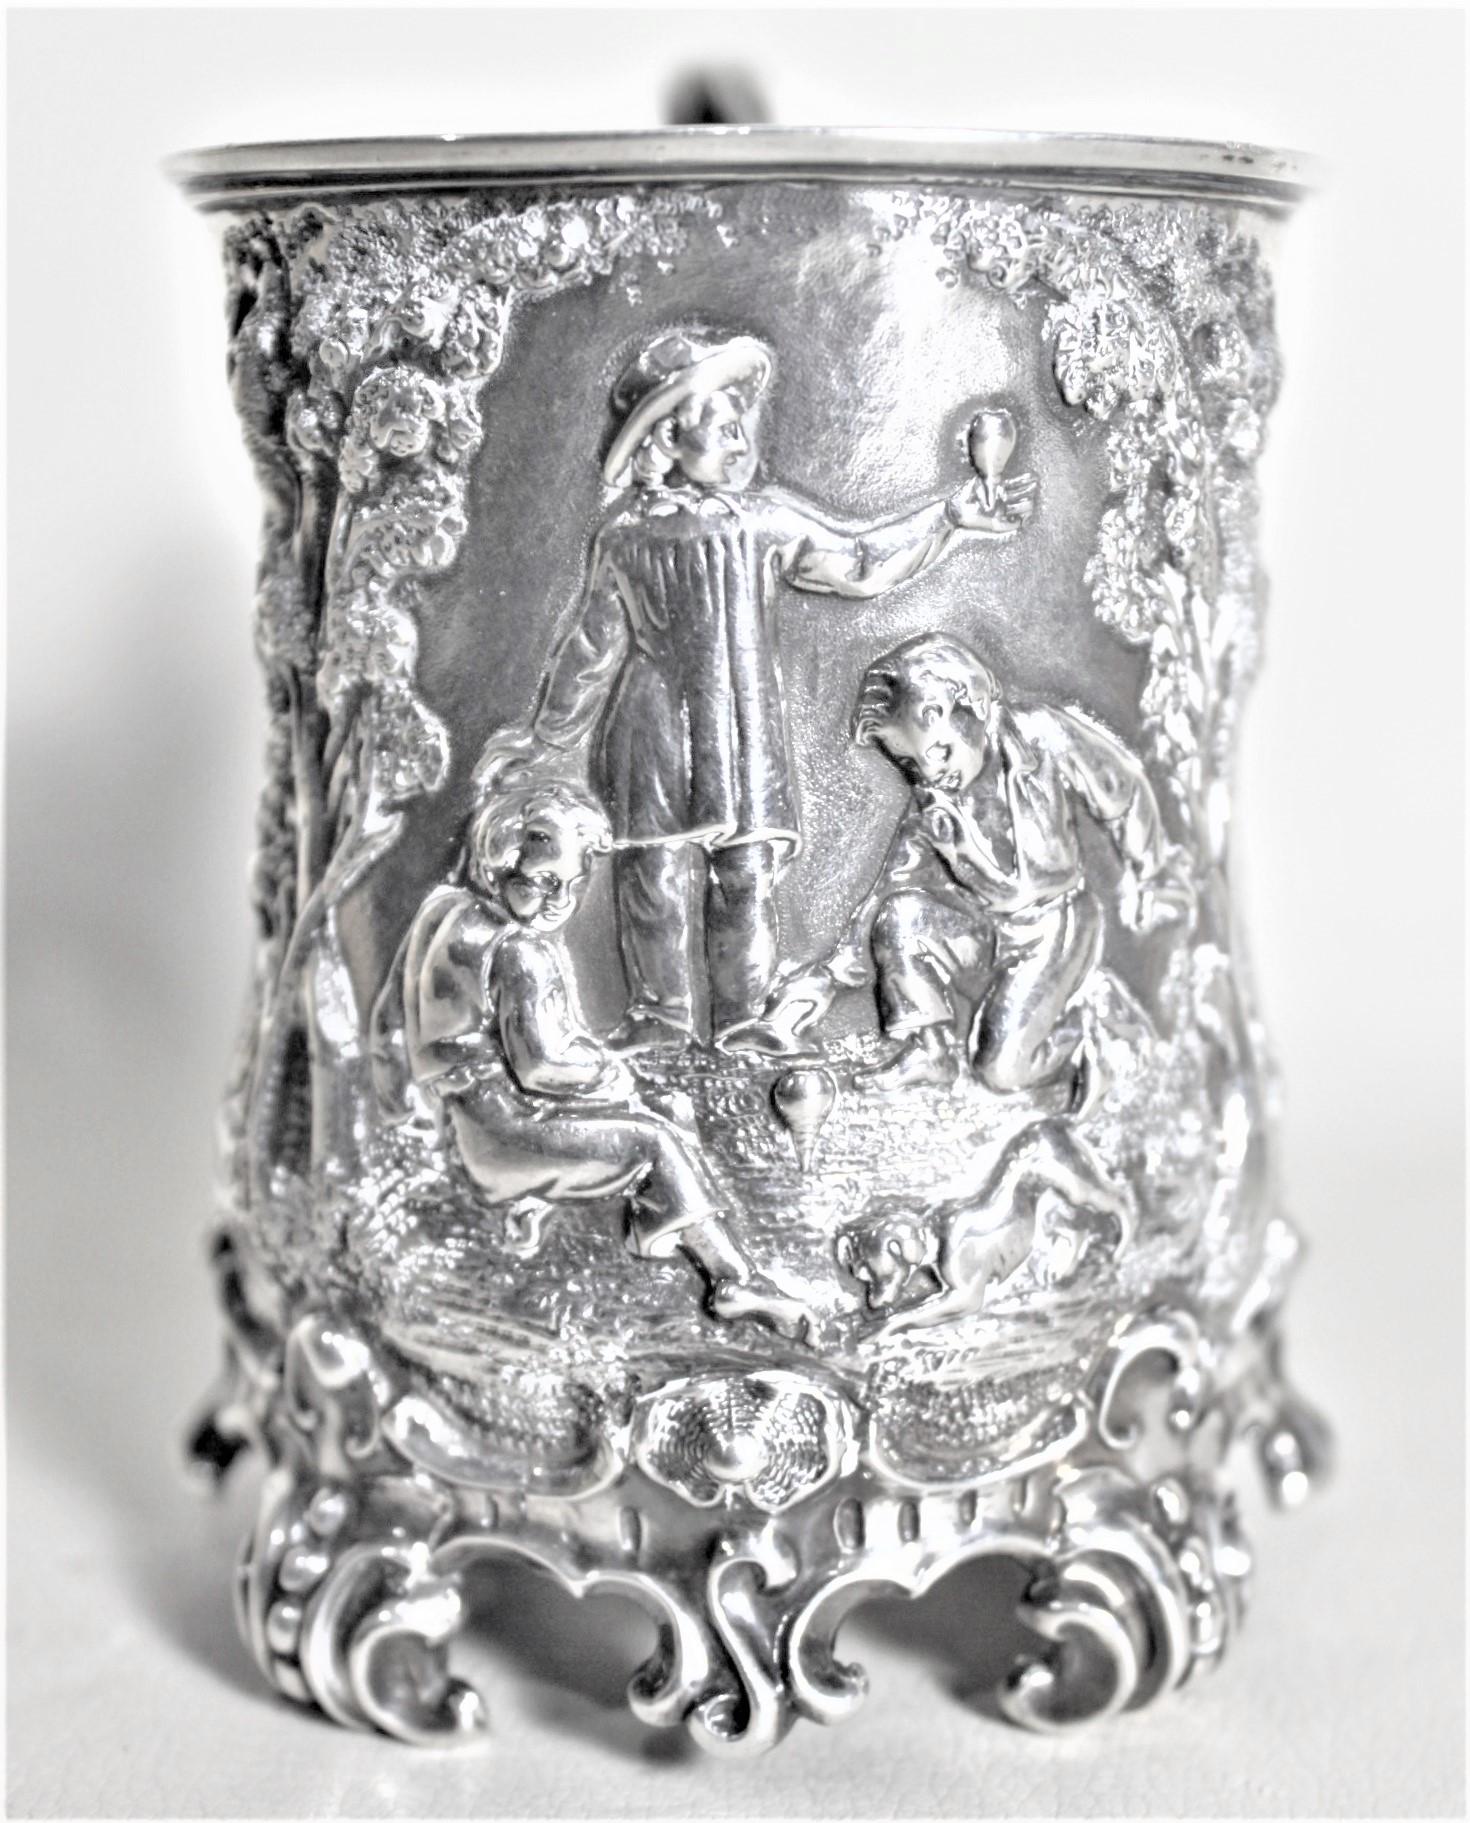 Cette coupe de baptême antique en argent sterling a été fabriquée en Angleterre vers 1848 dans le style victorien précoce. L'avant de cette tasse en sterling est orné d'une vignette détaillée représentant trois garçons dans une forêt jouant avec des